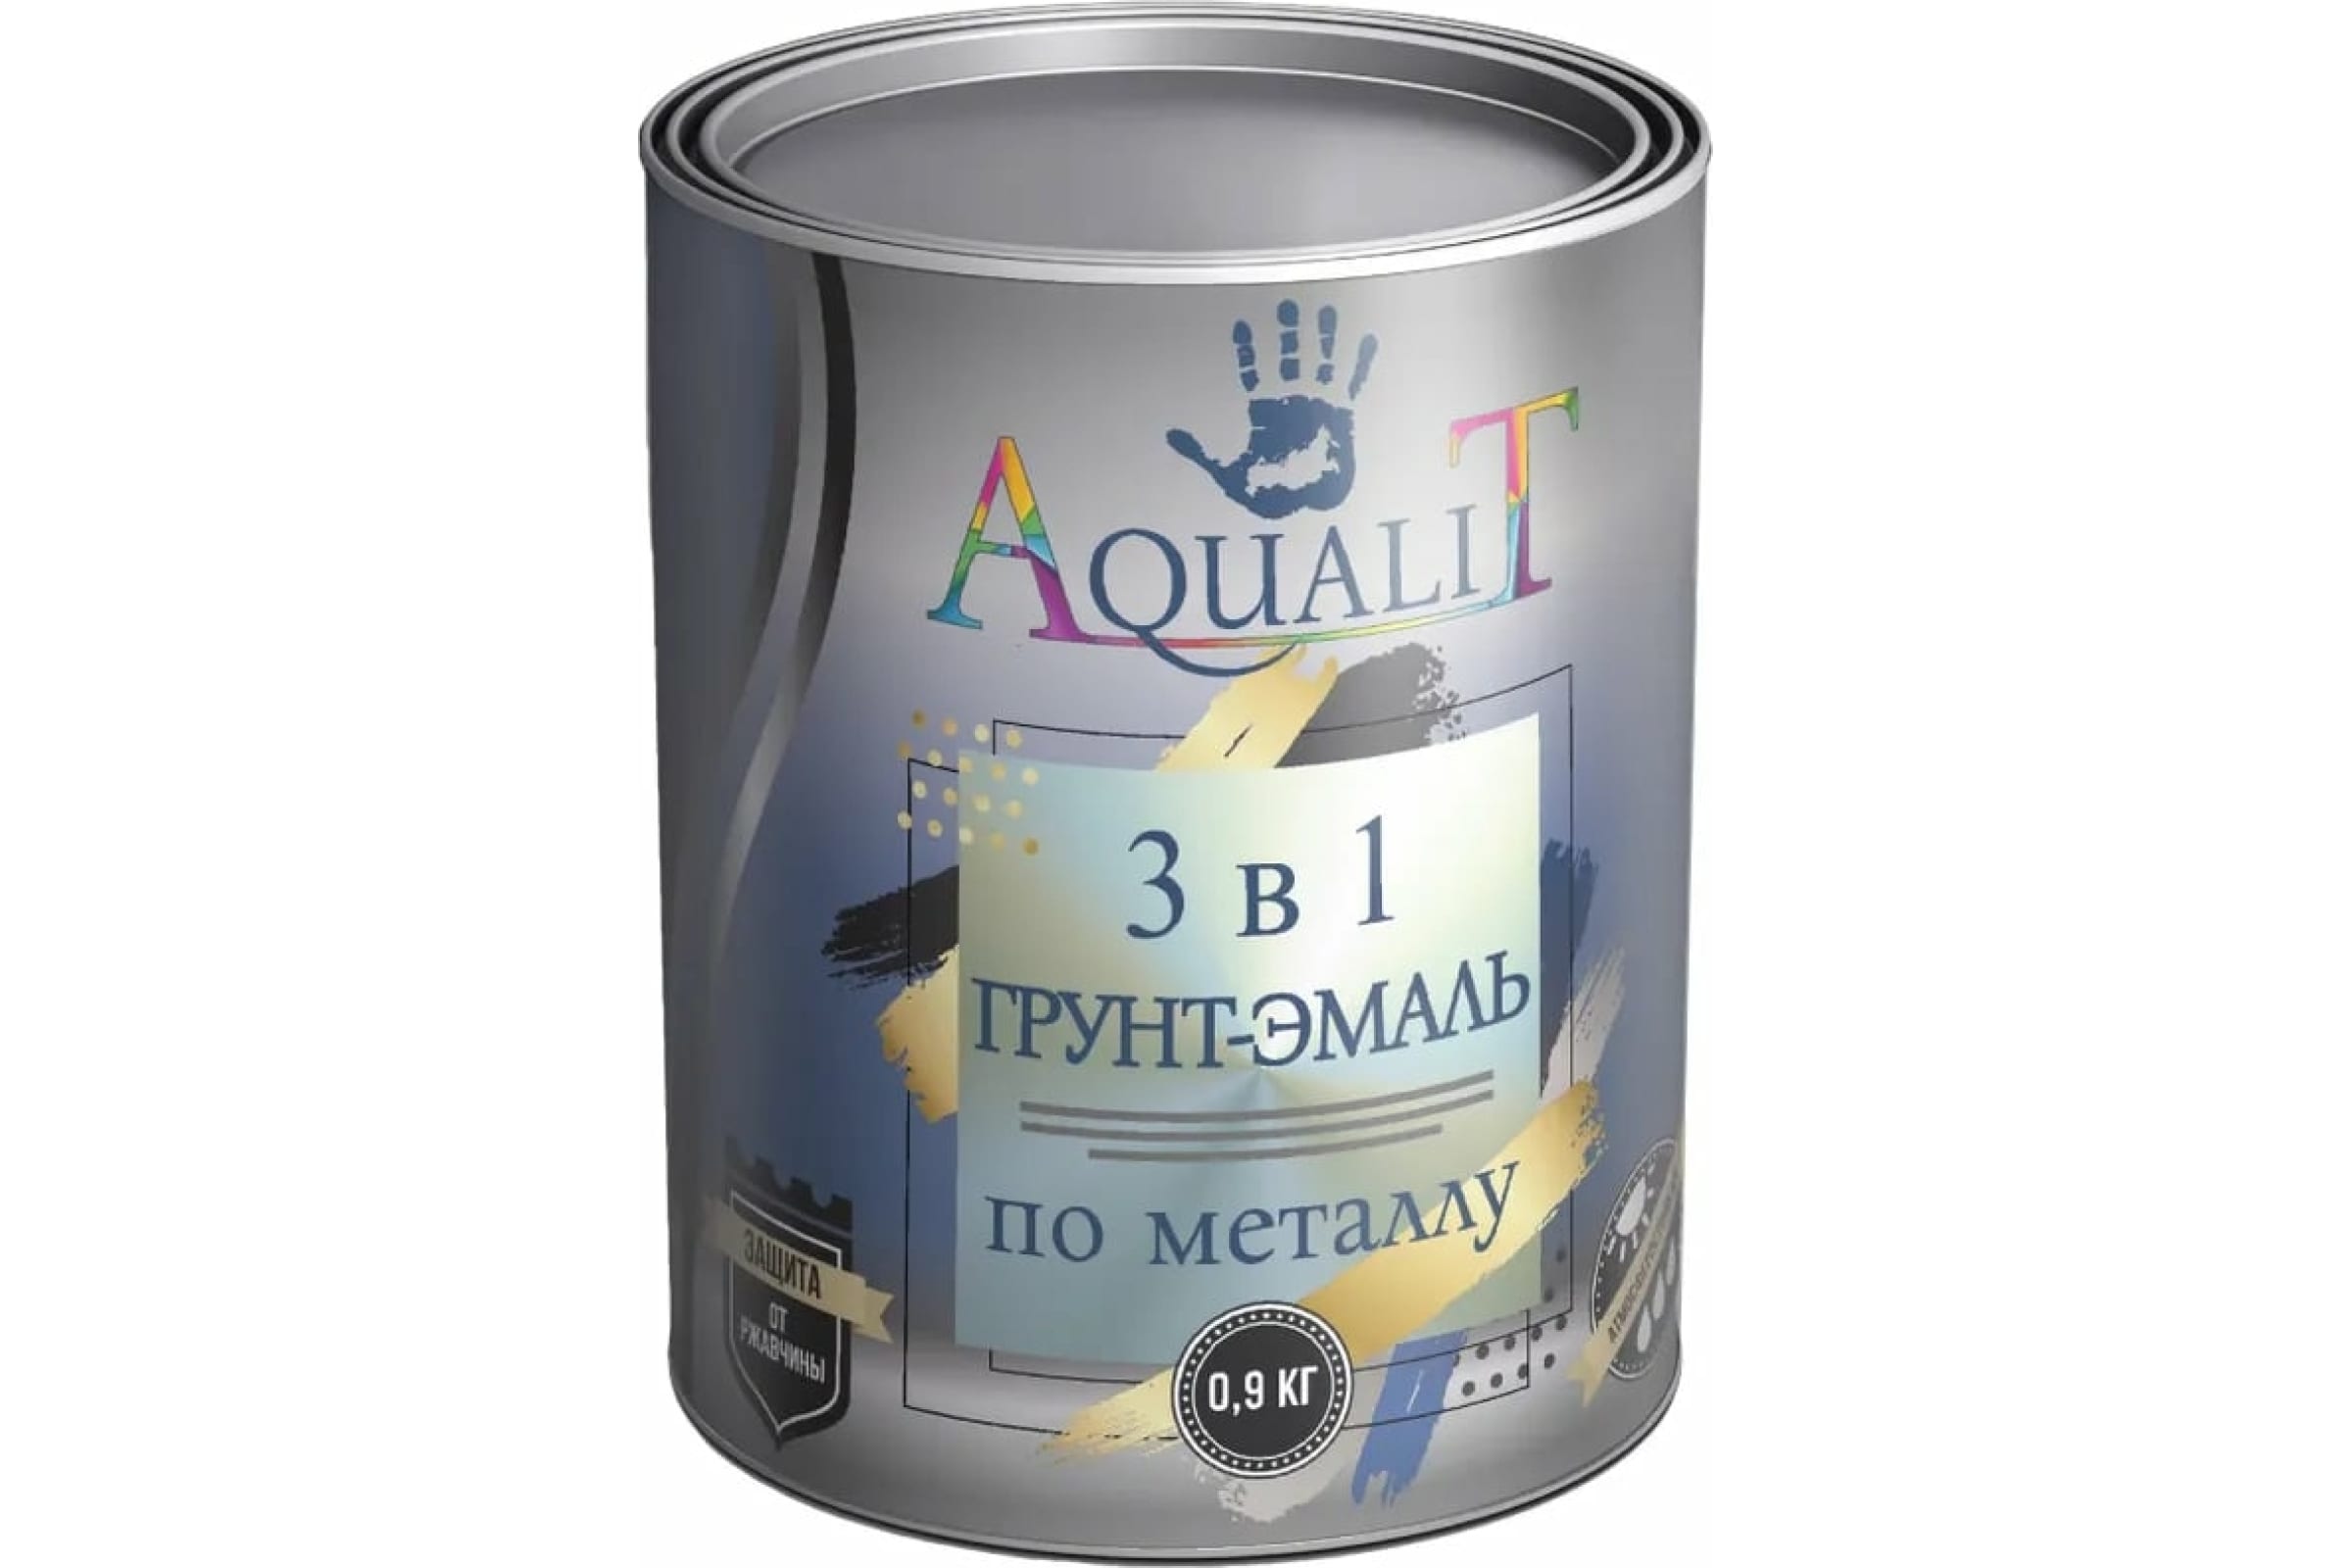 фото Aqualit грунт-эмаль 3в1 серая 0,9 кг pvpsz026 nobrand